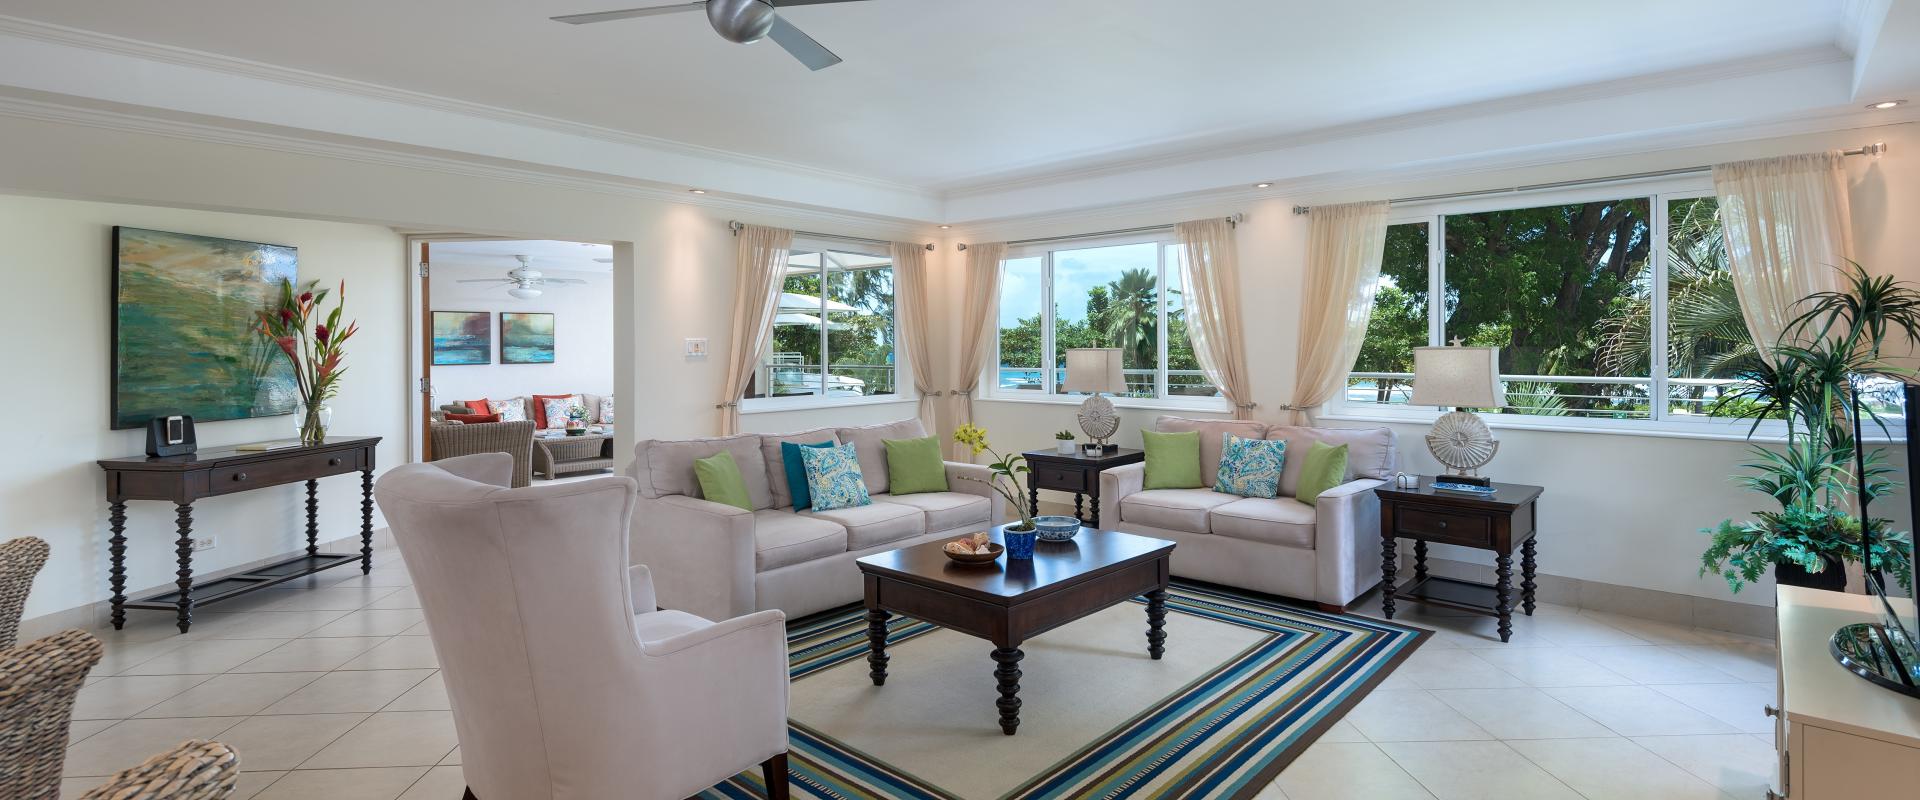 Palm Beach 204 Barbados Beachfront Condo Rental Living Room and TV